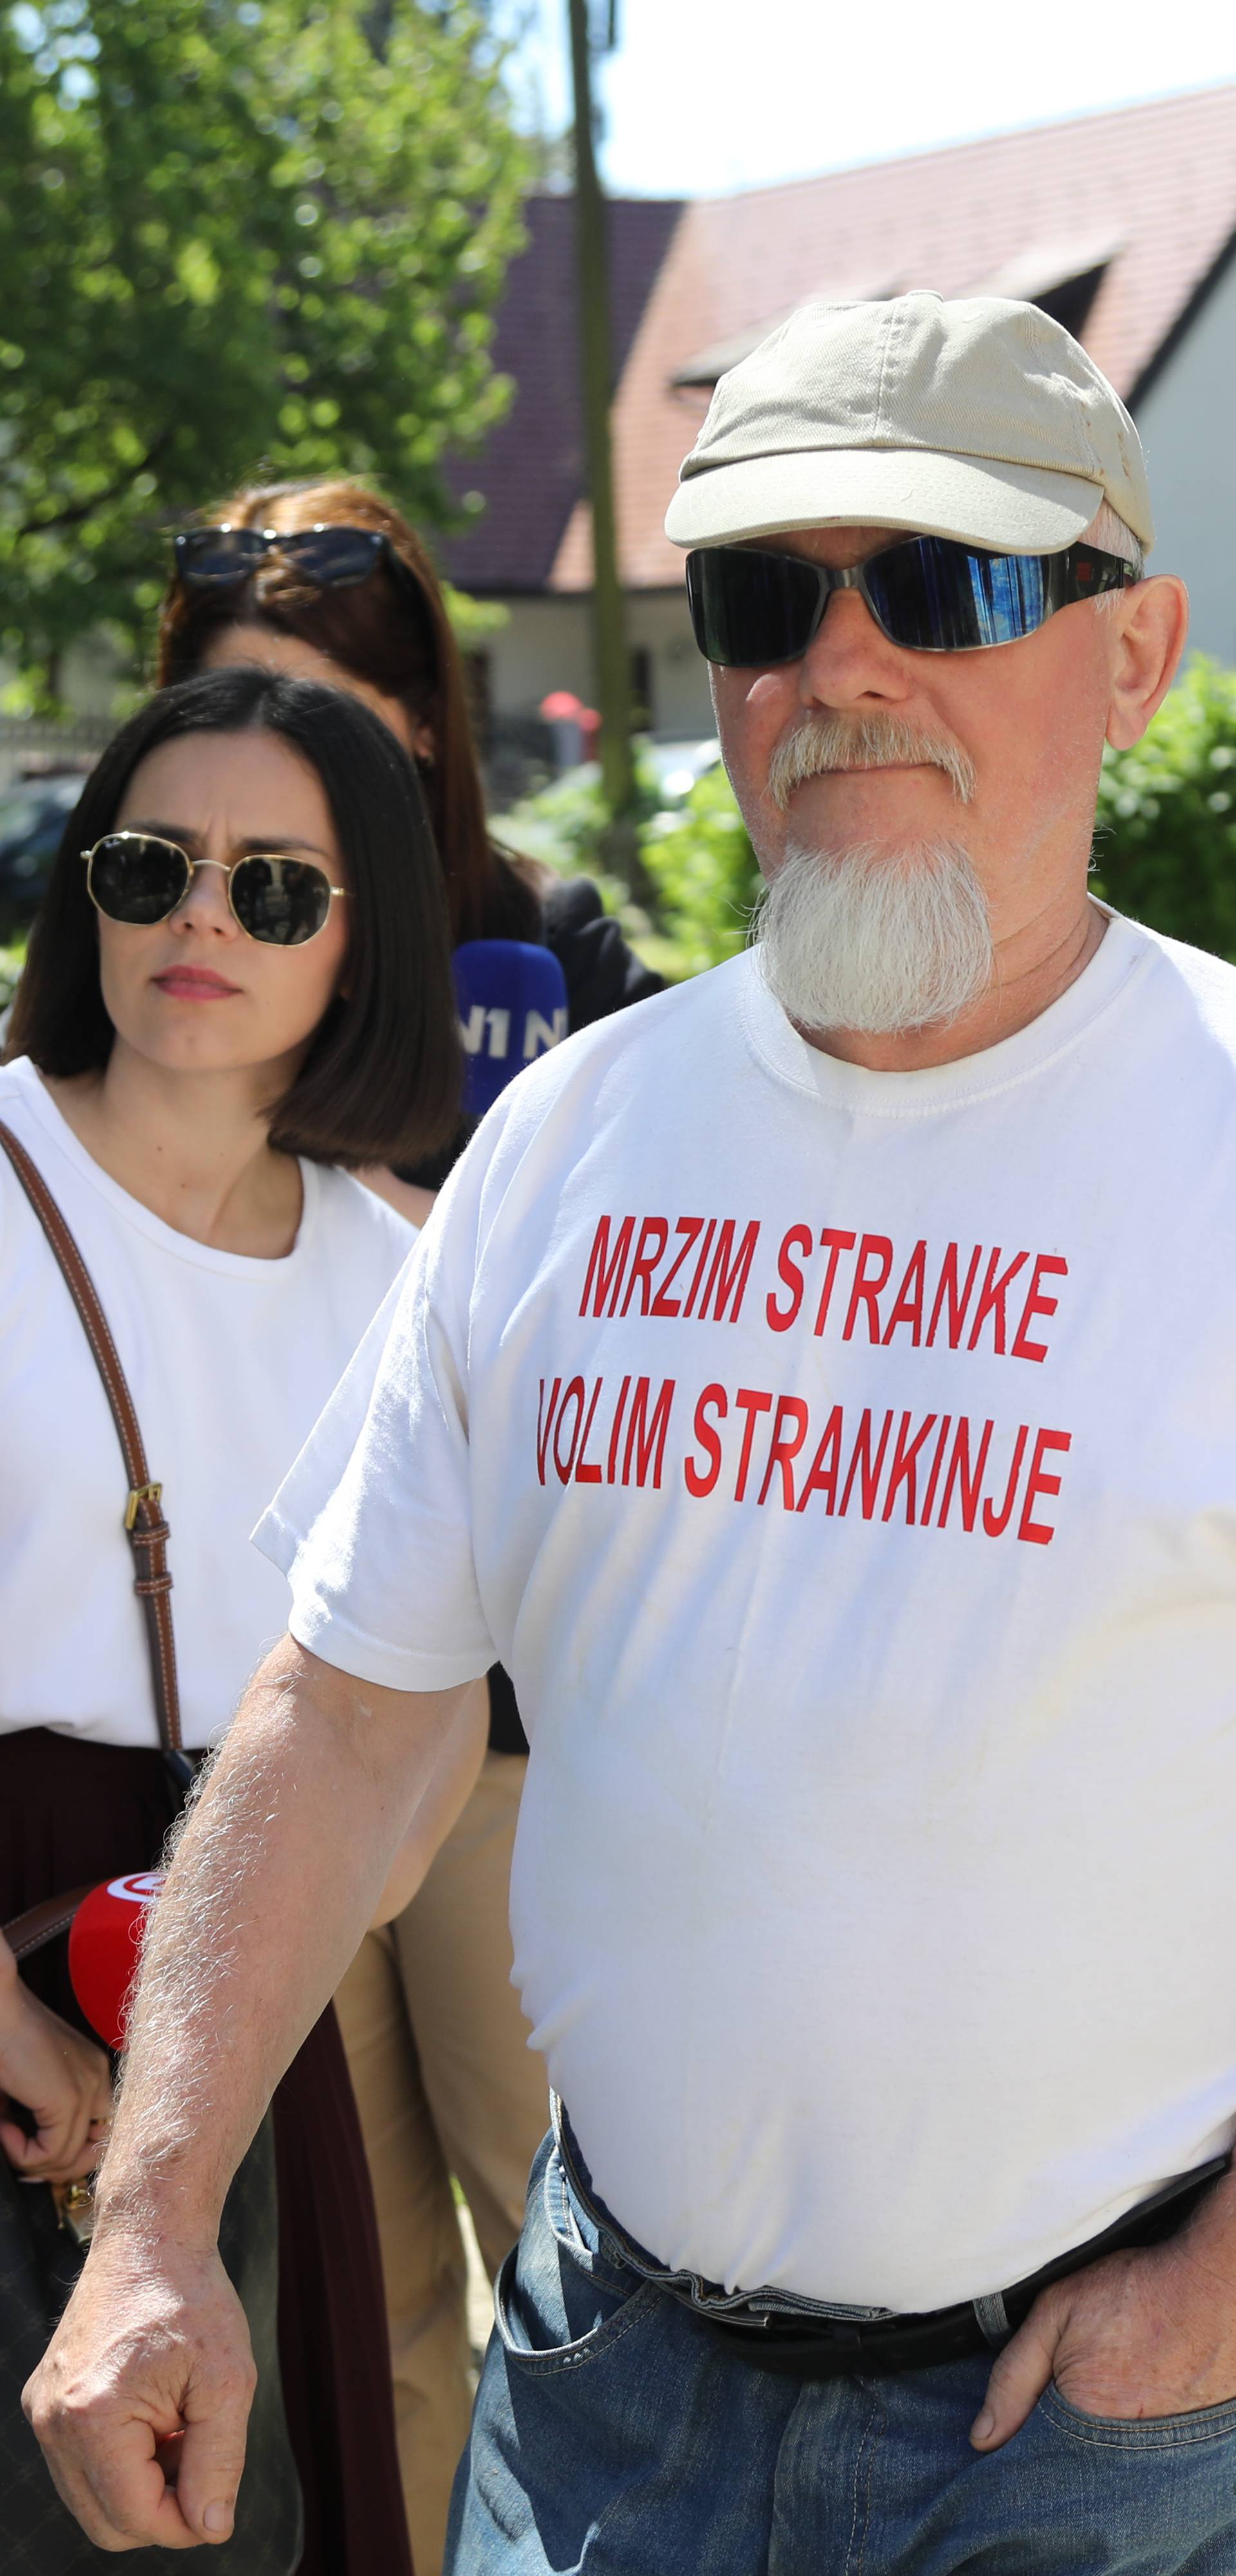 Samobor: Prolaznik iskazao politički stav zanimljivim natpisom na majici